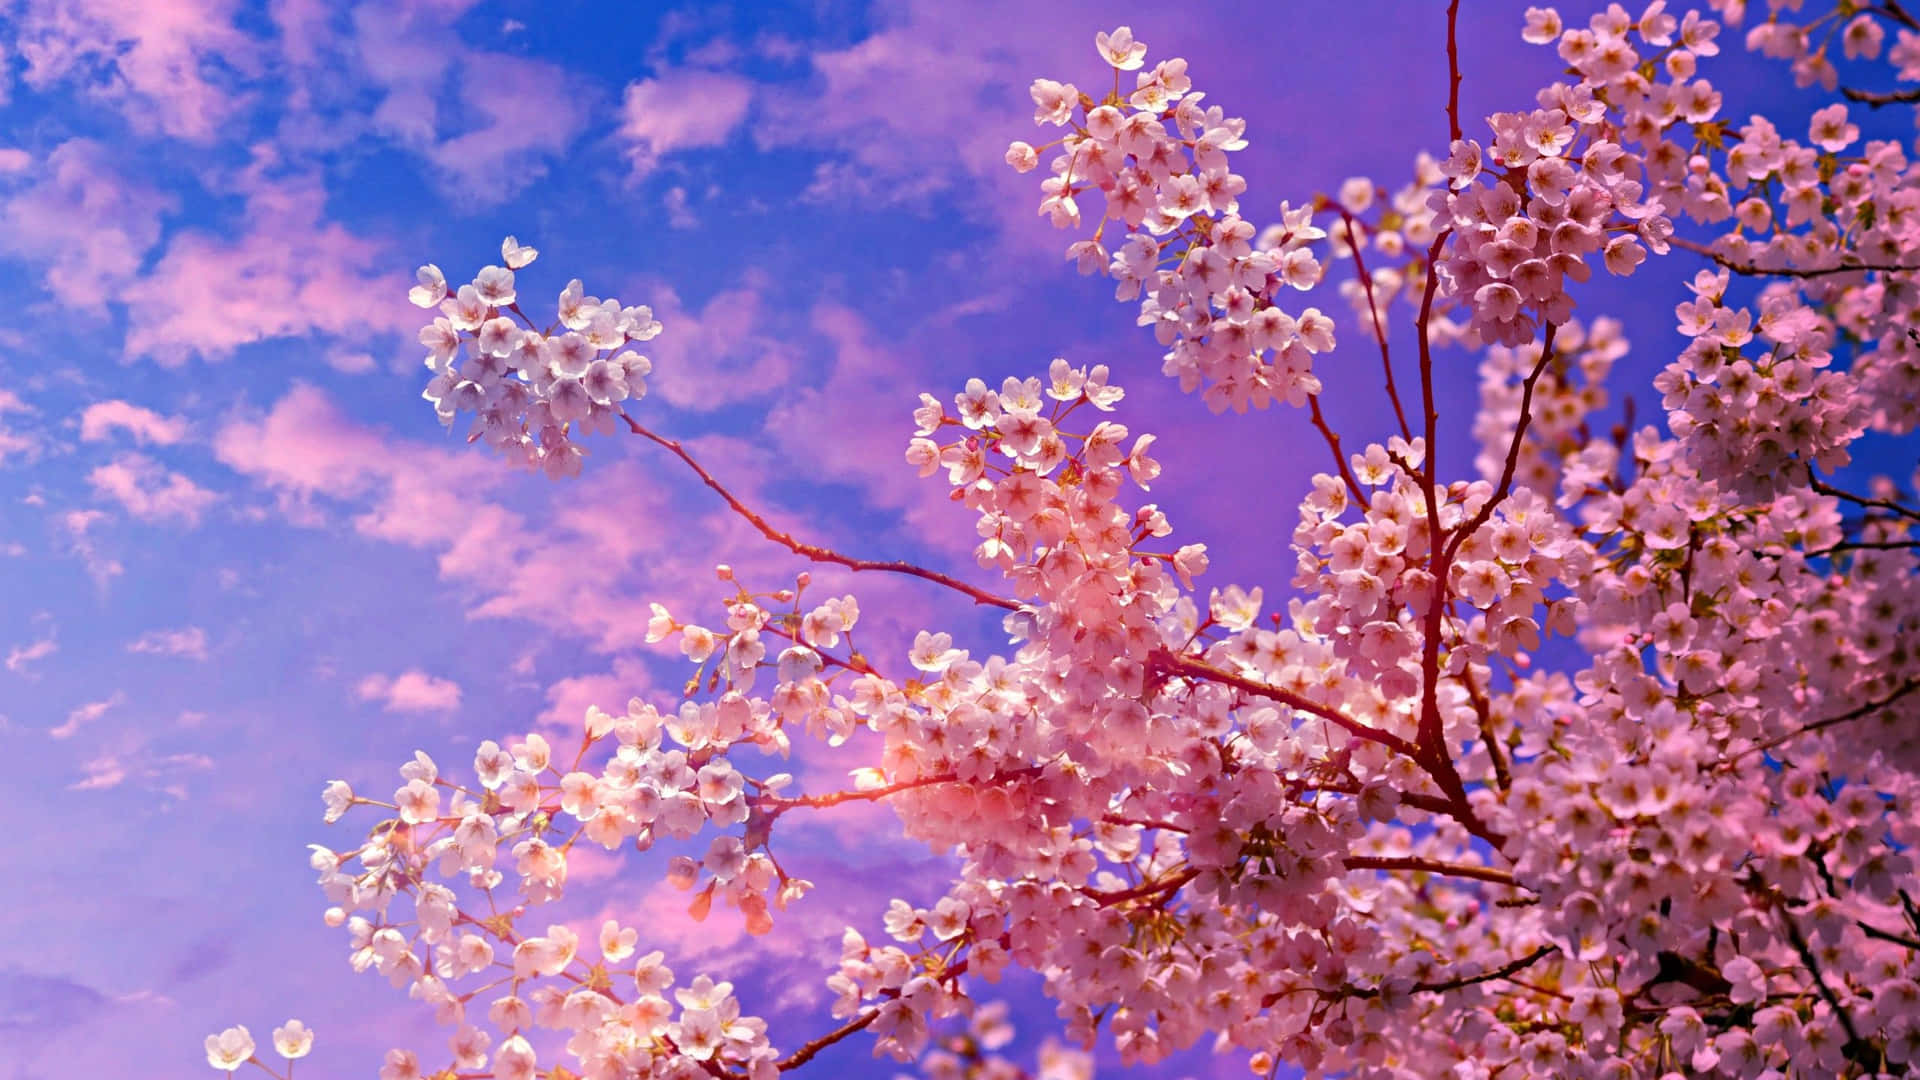 Disfrutade La Vista De Hermosos Cerezos En Flor Por La Noche Fondo de pantalla